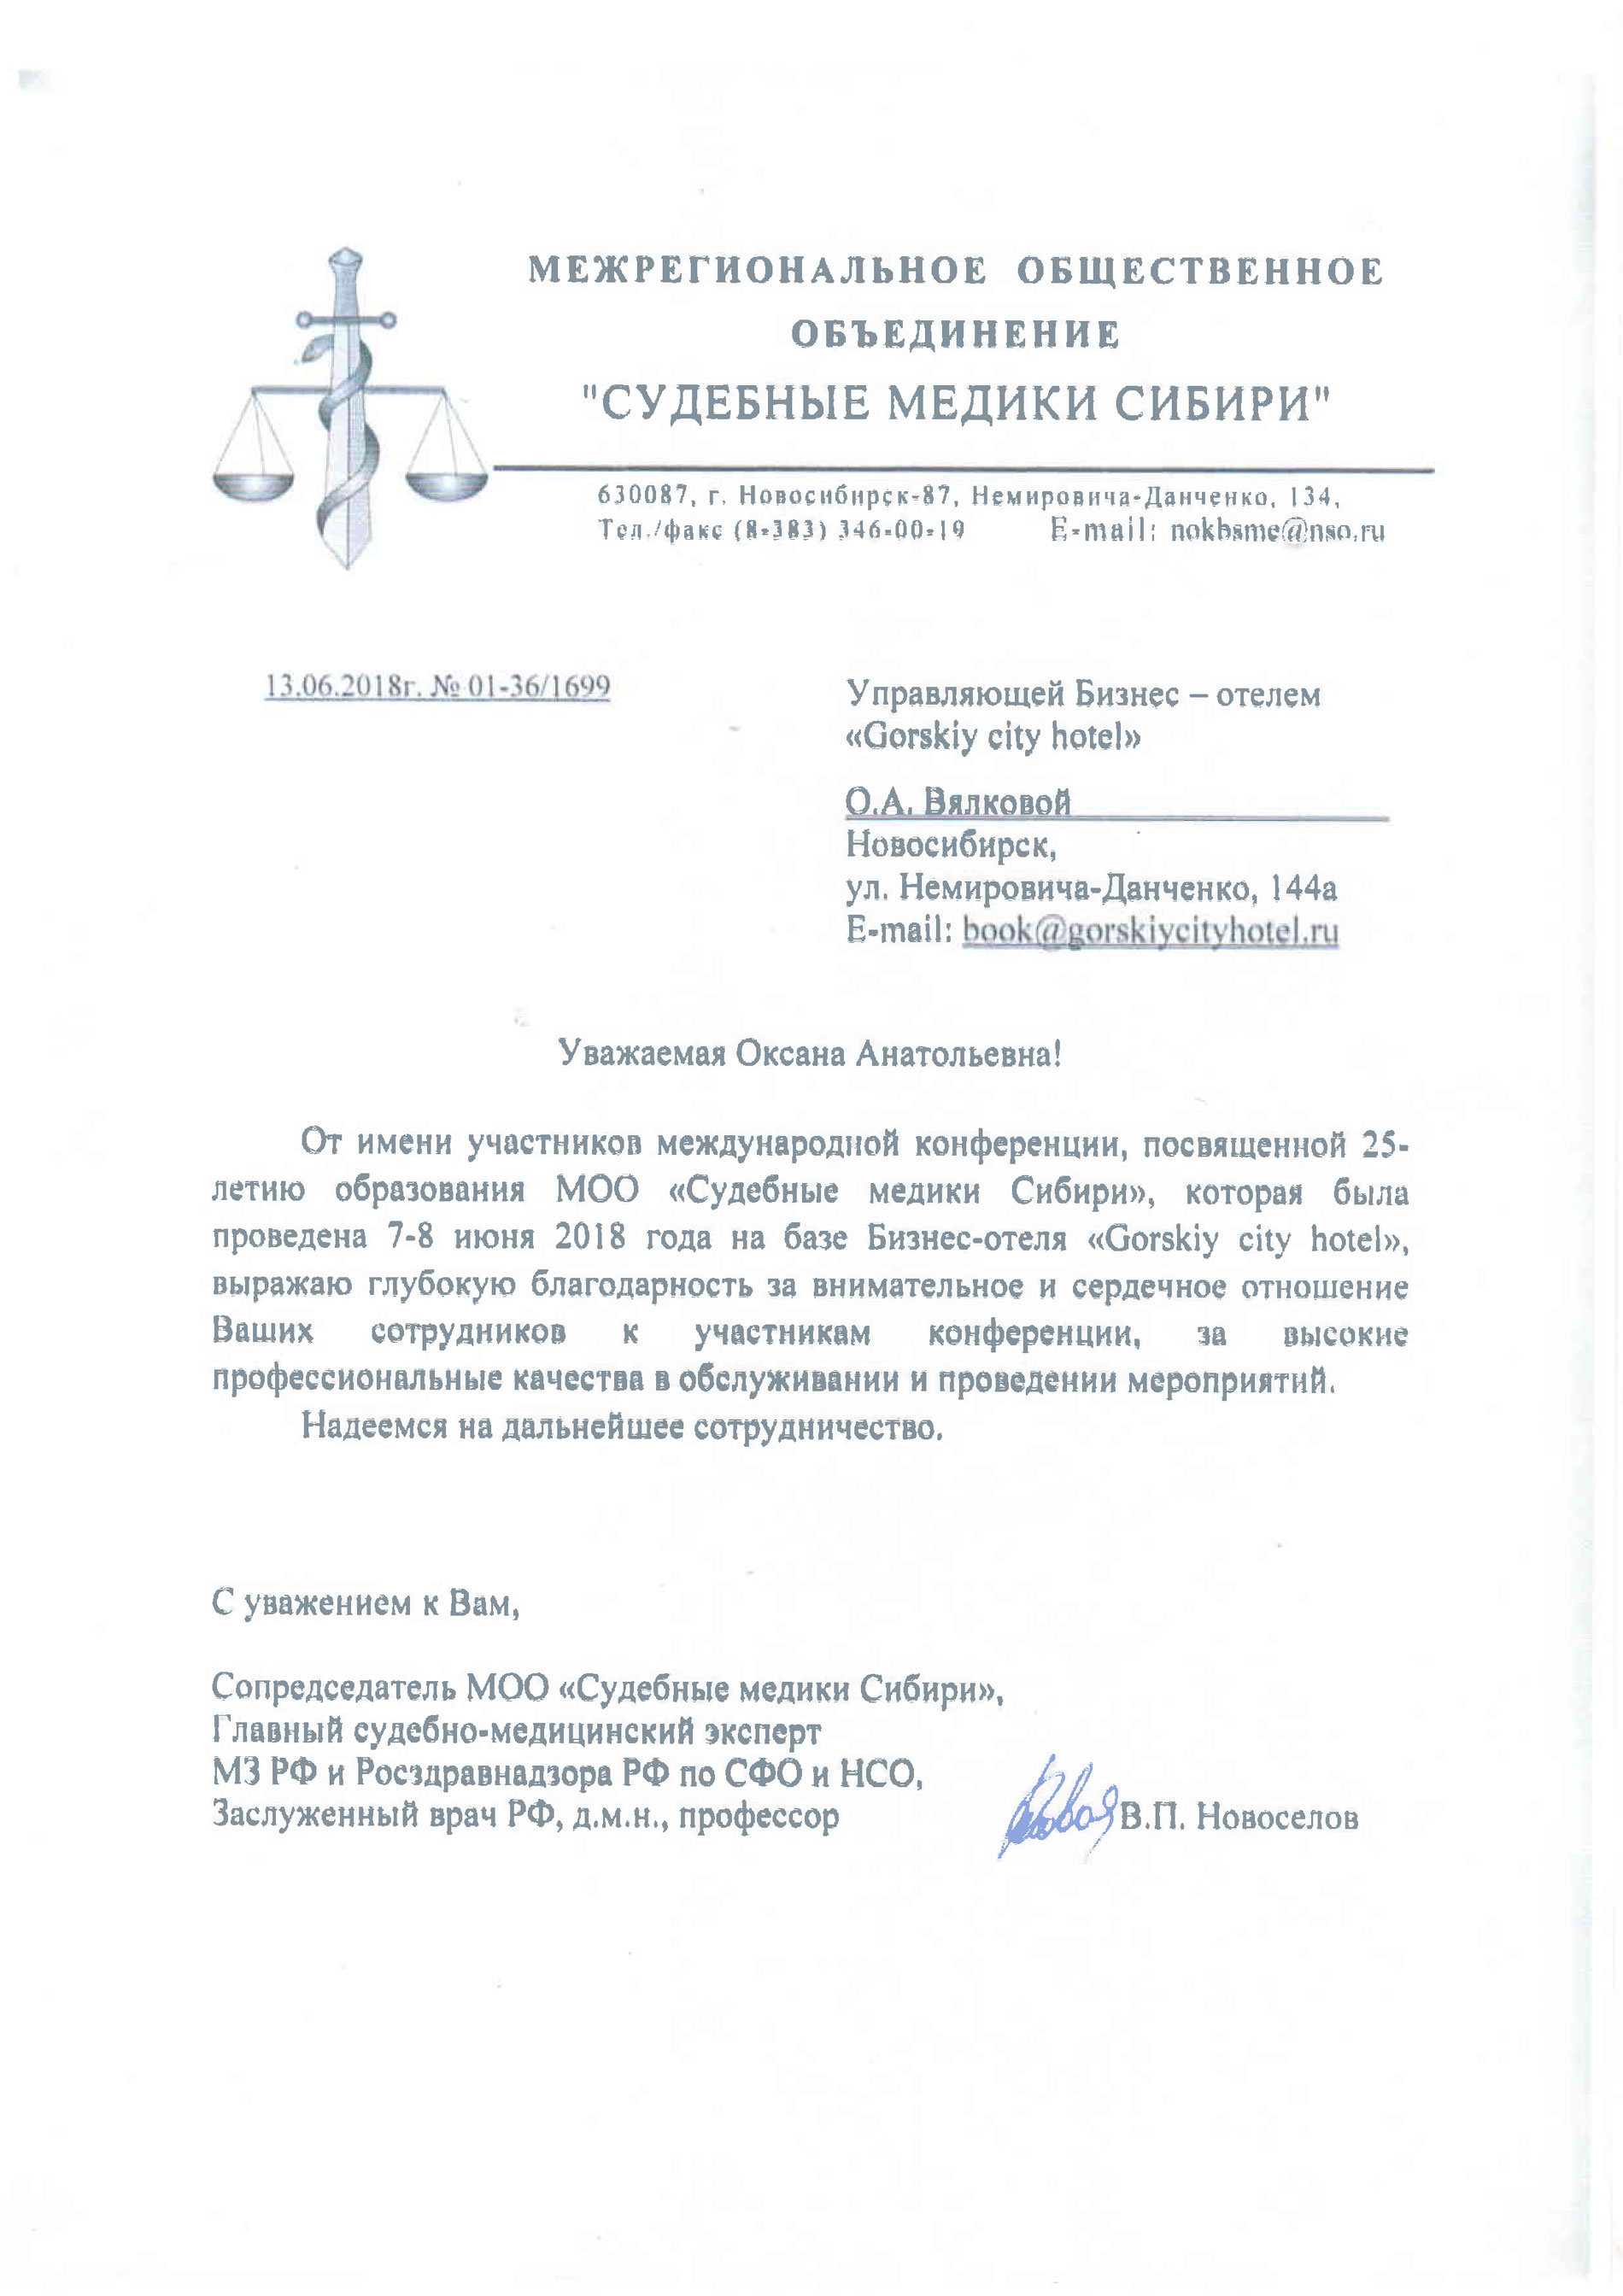 Благодарность от МОО "Судебные медики России"